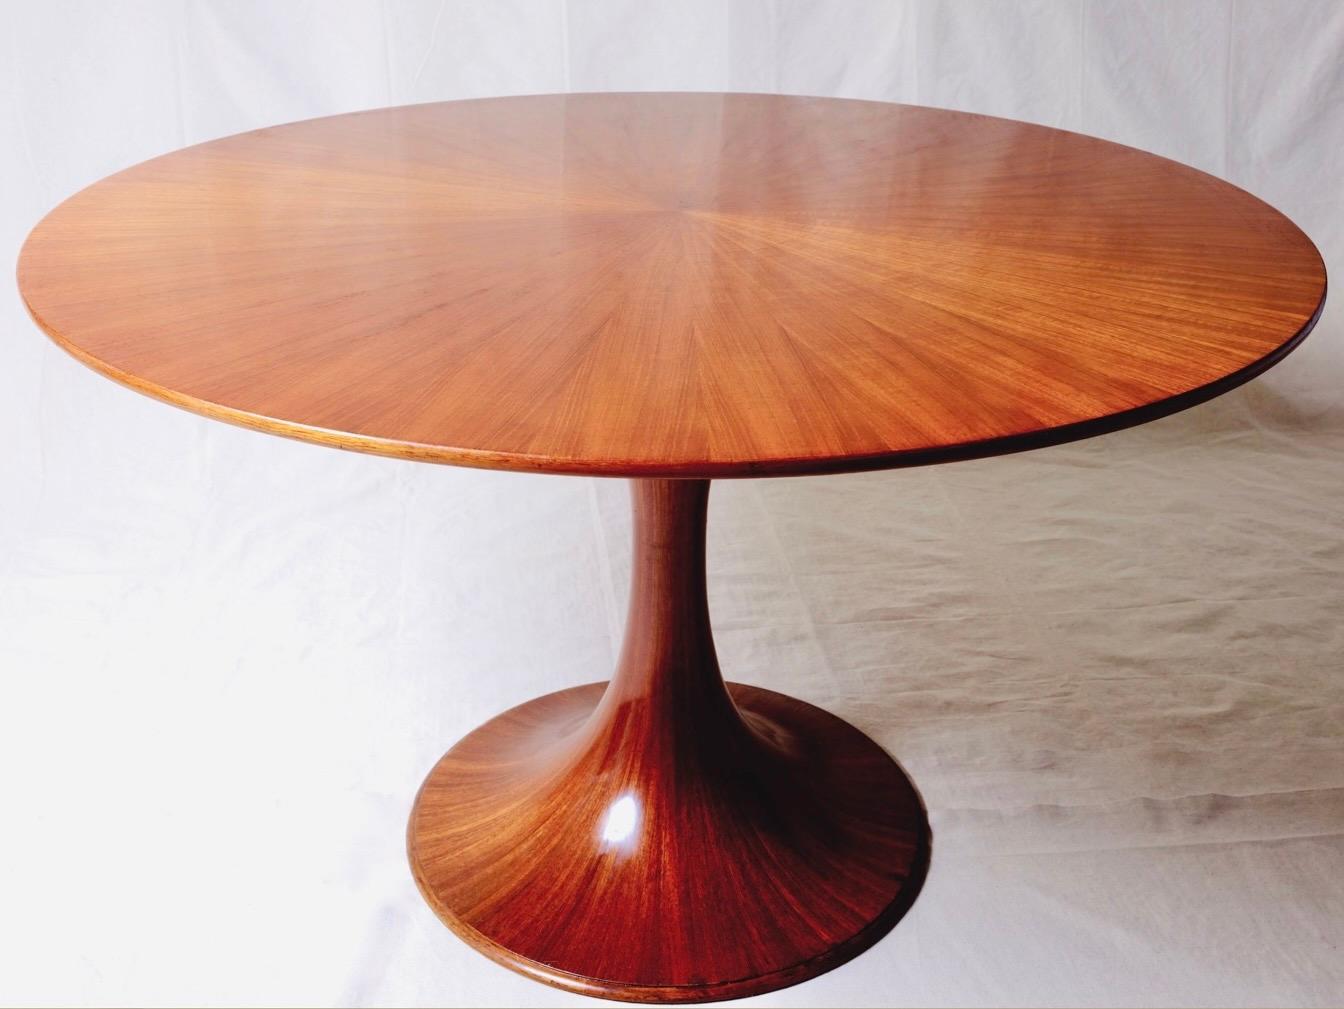 Ein zeitloser und kompakter Esstisch, entworfen von Luigi Massoni für Mobilia, Italien, 1950er Jahre.

Dies ist die begehrteste und sammelwürdige 'Sunburst'-Version des 'Clessidra'-Tisches mit der passenden 'Sunburst'-Platte und dem